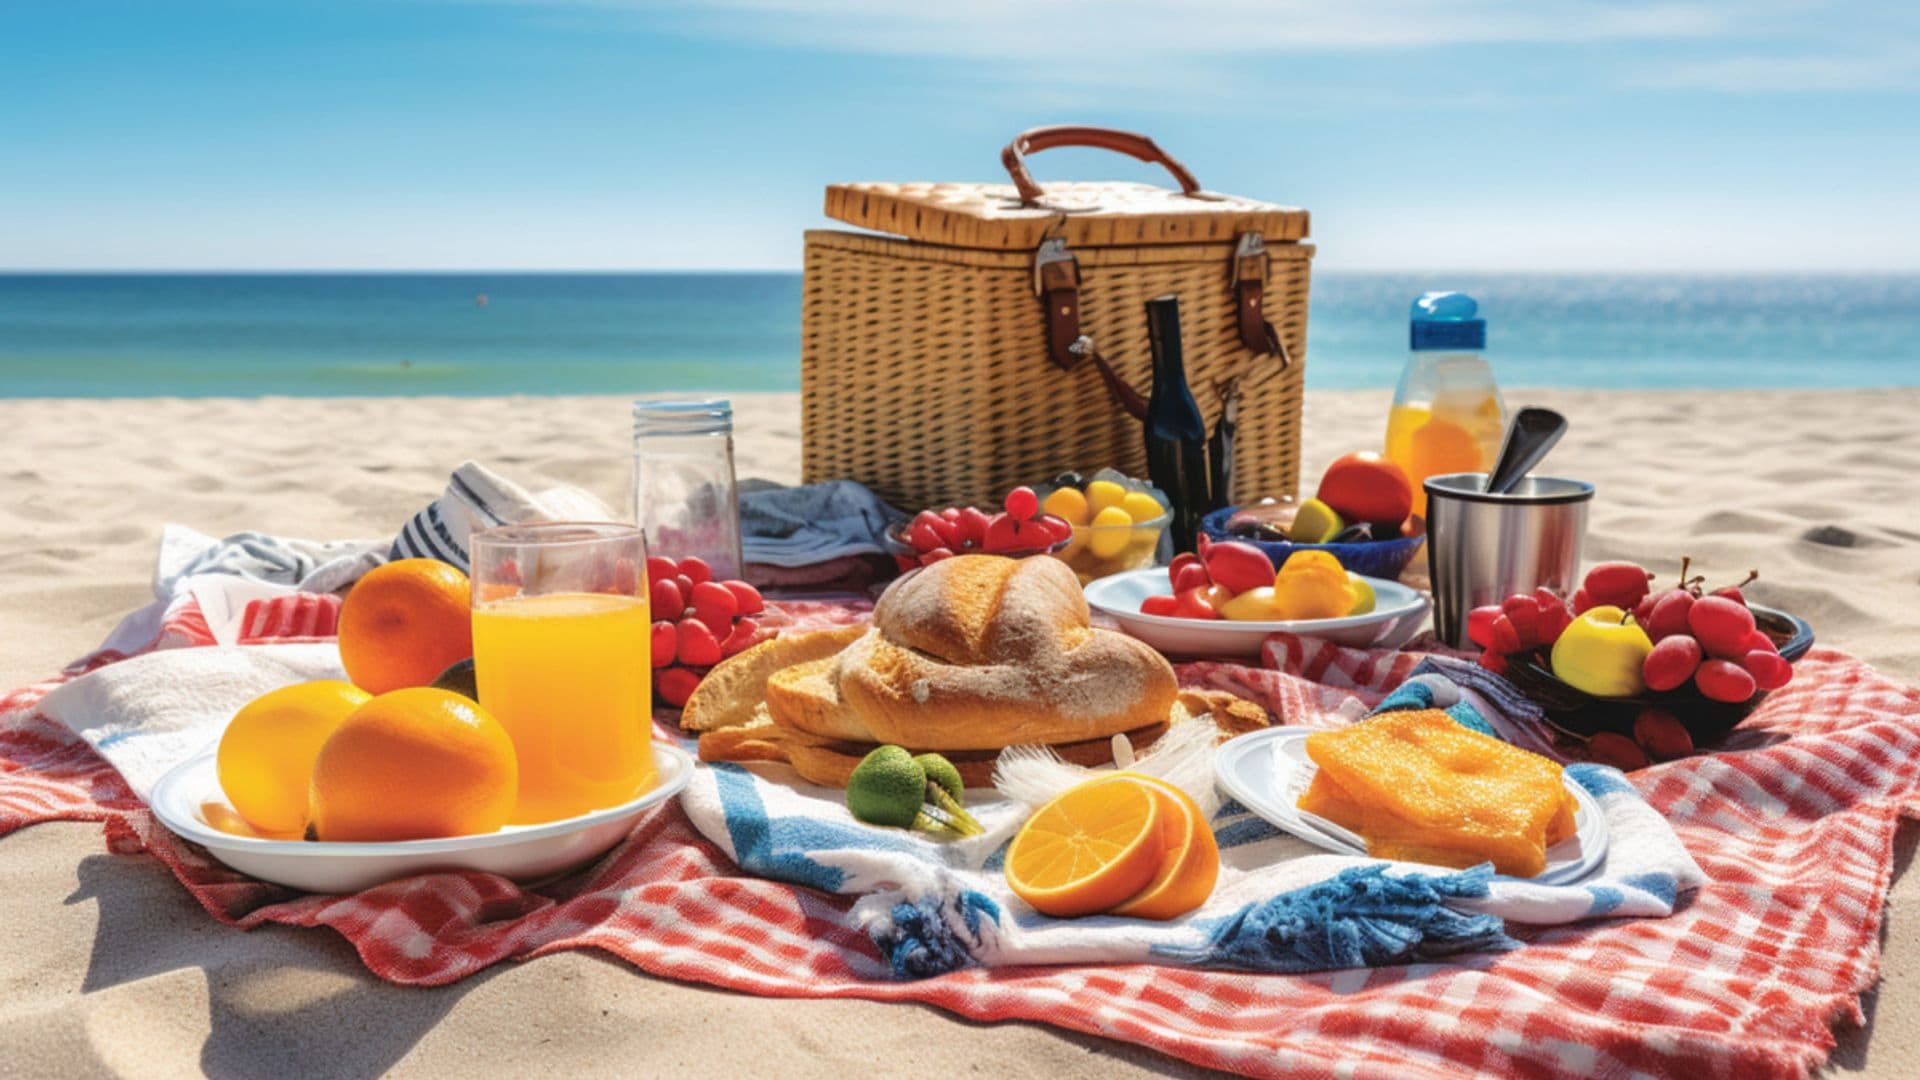 Recetas de verano frescas y sanas para meter en la cesta de la playa